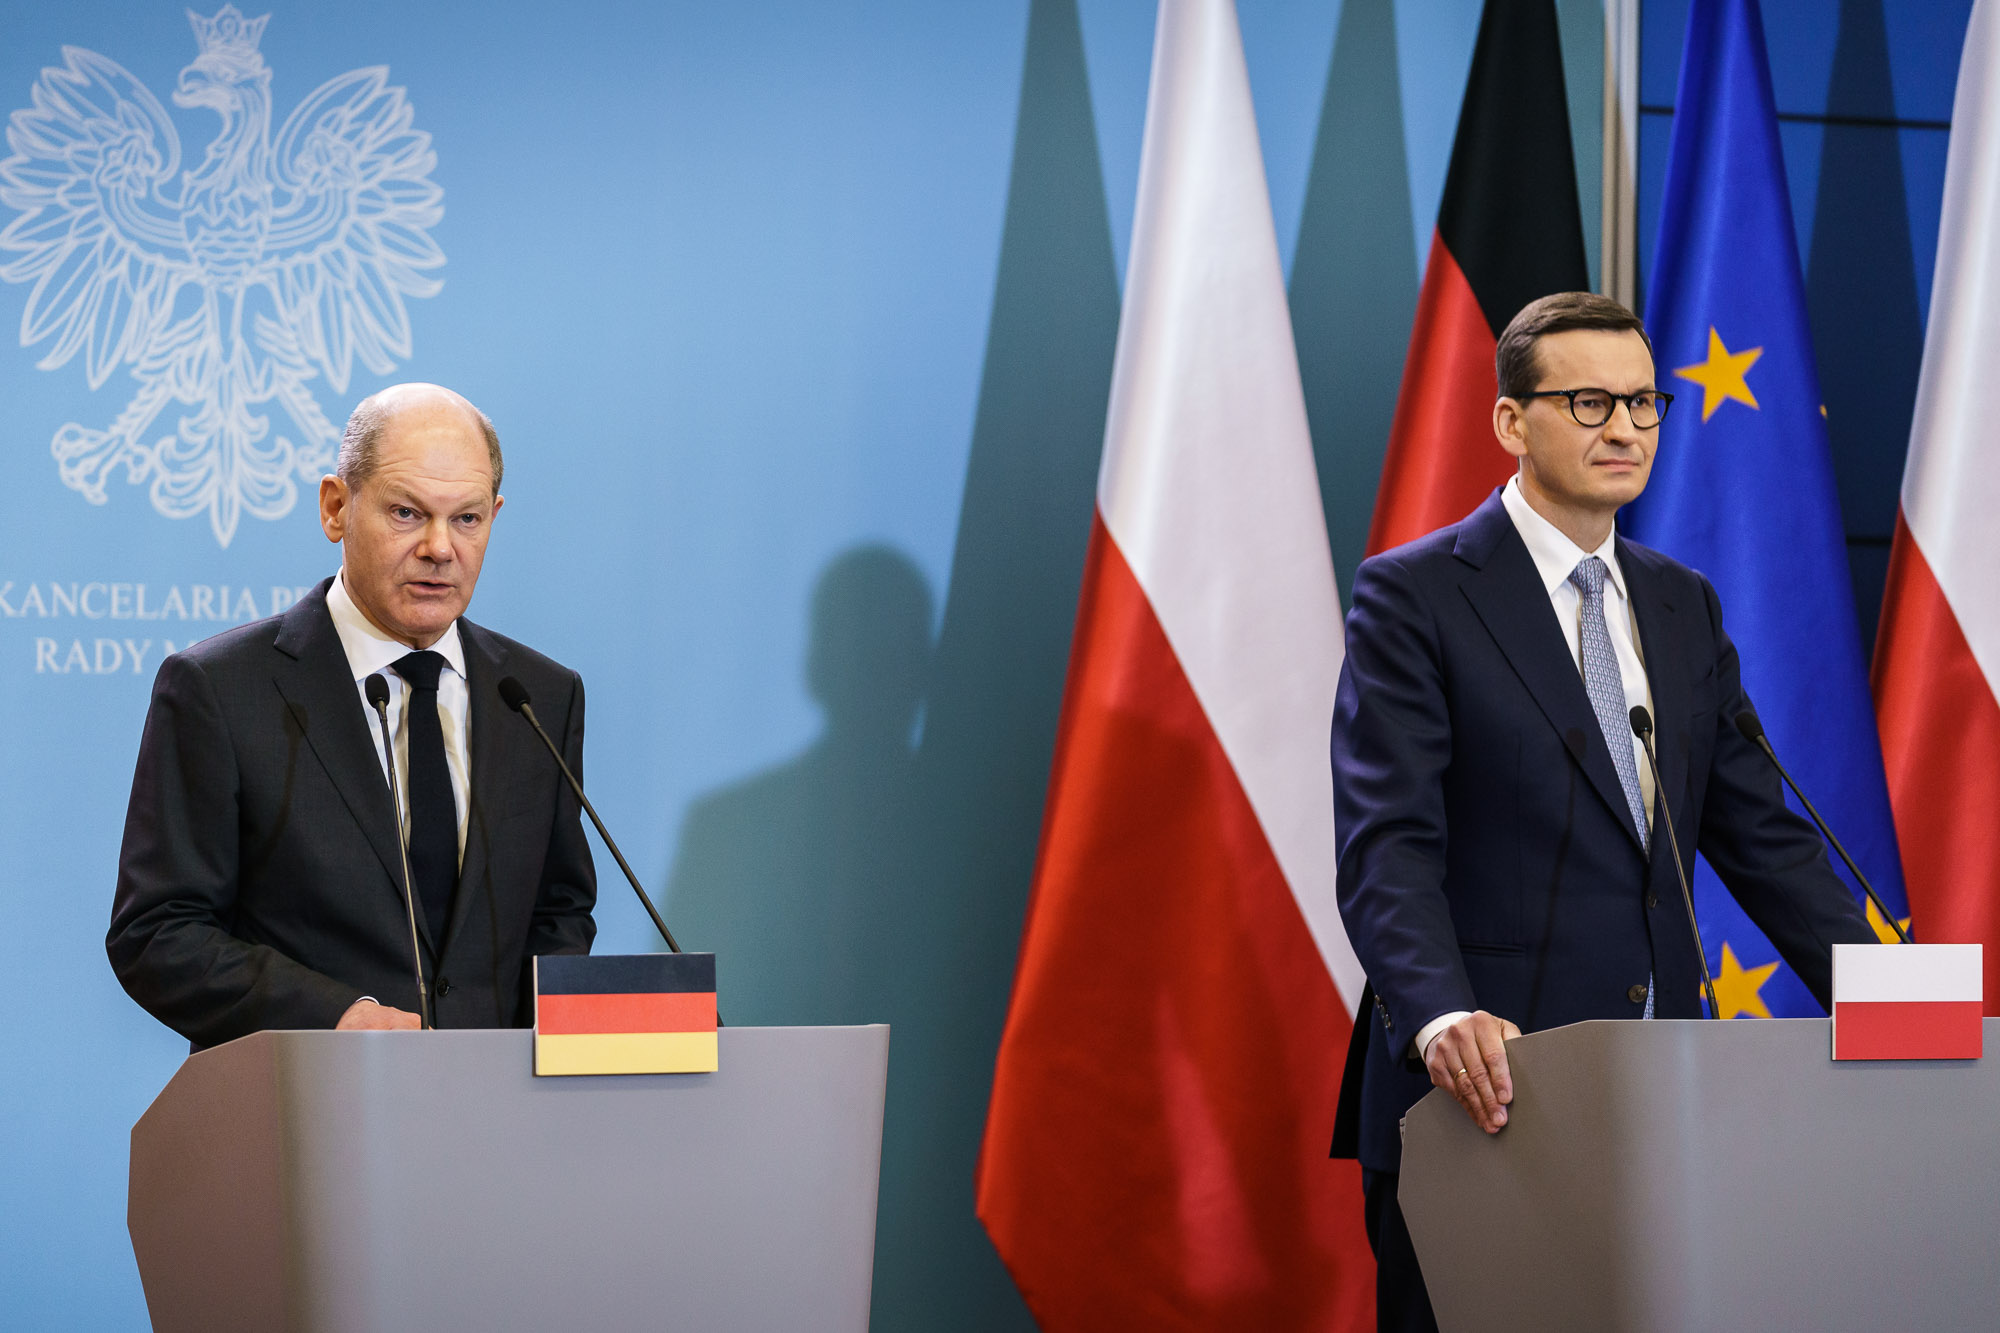 Bundeskanzler Olaf Scholz mit Mateusz Morawiecki, Polens Ministerpräsident bei gemeinsamer Pressekonferenz.